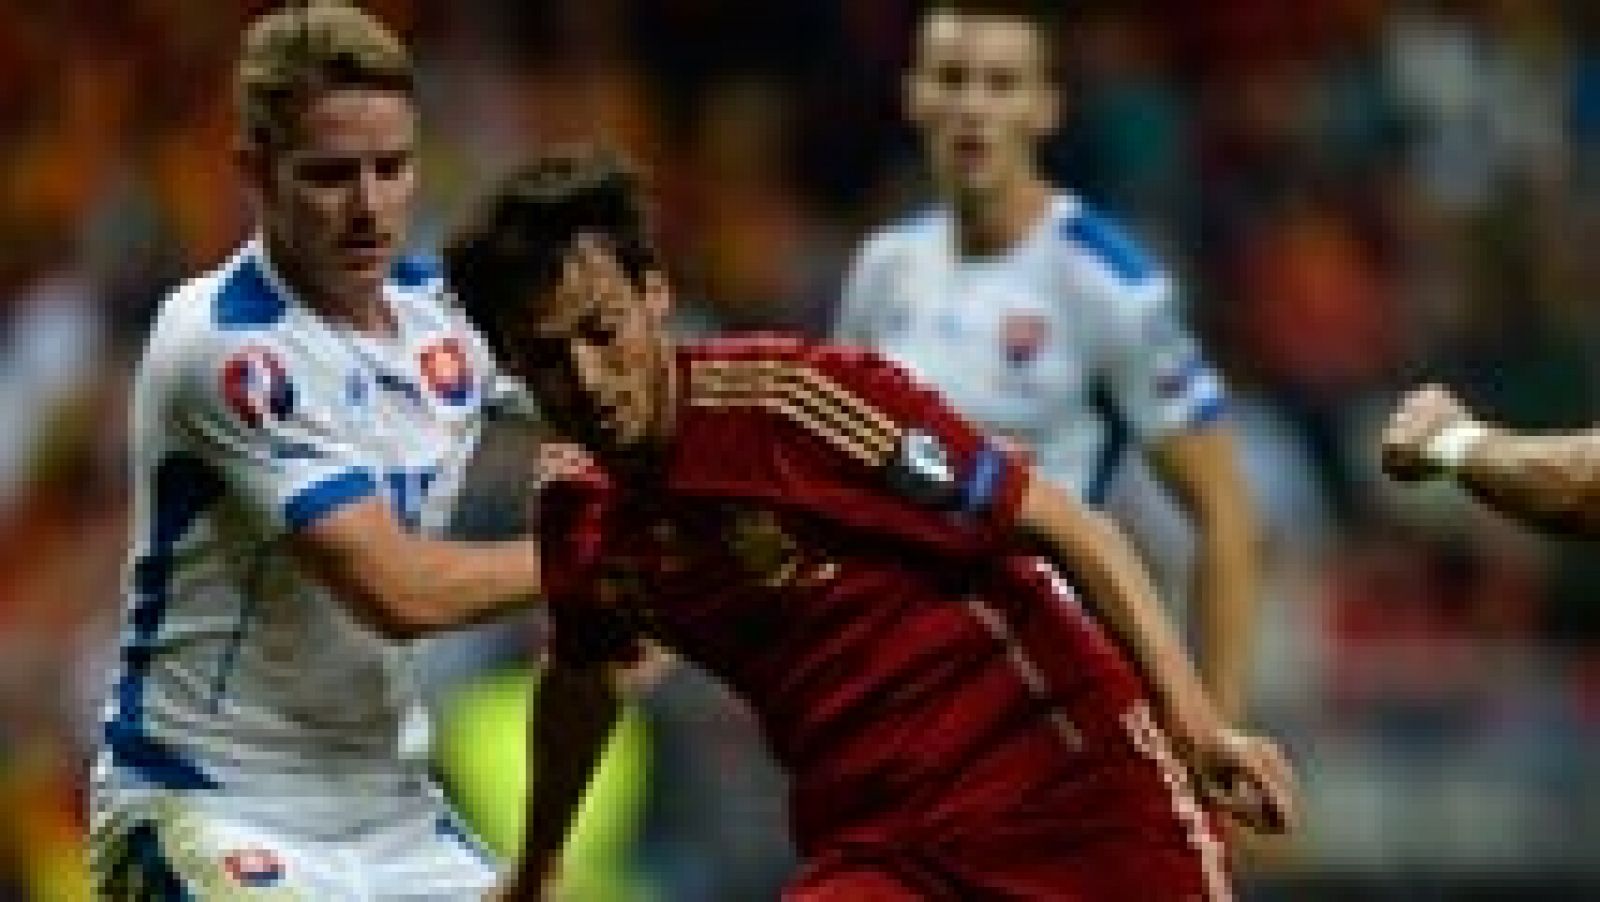 La selección de fútbol de España vence a Eslovaquia por 2-0 en partido clasificatorio para la Eurocopa 2016. La victoria sirve a la Roja para recuperar el liderato del Grupo C, que le había arrebatado previamente la selección eslovaca en Zilina. Estas fueron las claves.